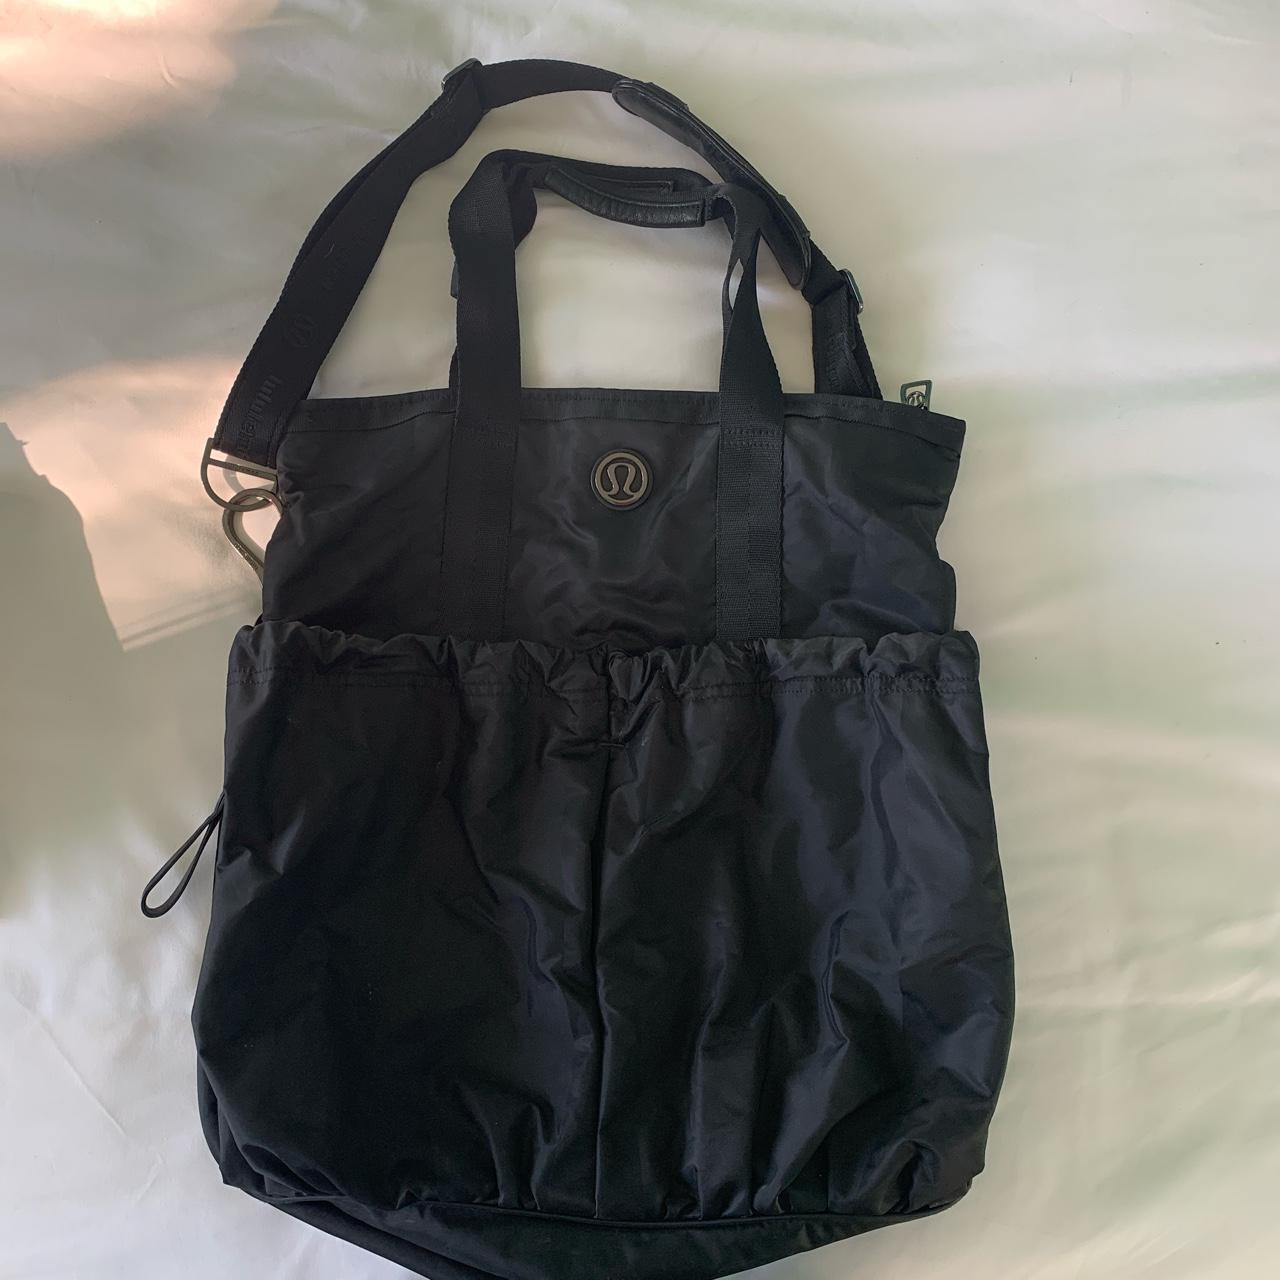 Lululemon Reusable Bags, older styles - Depop